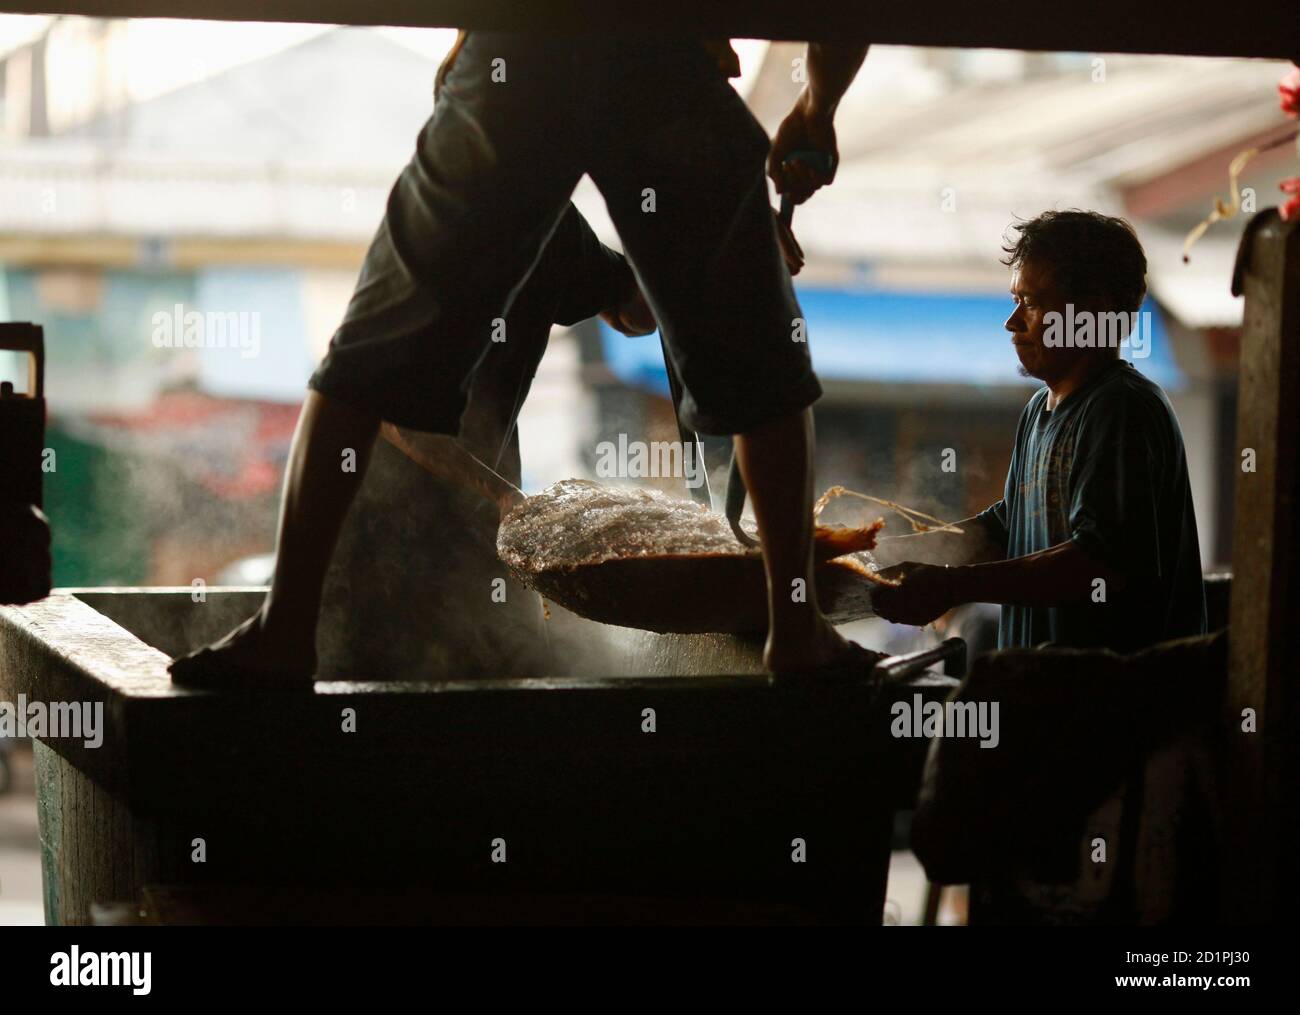 Los trabajadores indonesios pusieron pescado en una caja de almacenamiento en frío en un mercado de pescado en Yakarta 24 de noviembre de 2009. La tasa de inflación anual de Indonesia es probablemente de 3.5 por ciento a finales de año, informó el martes el subgobernador senior del banco central, Darmon Nasution. REUTERS/BEAWIHARTA (ECONOMÍA DE INDONESIA) Foto de stock